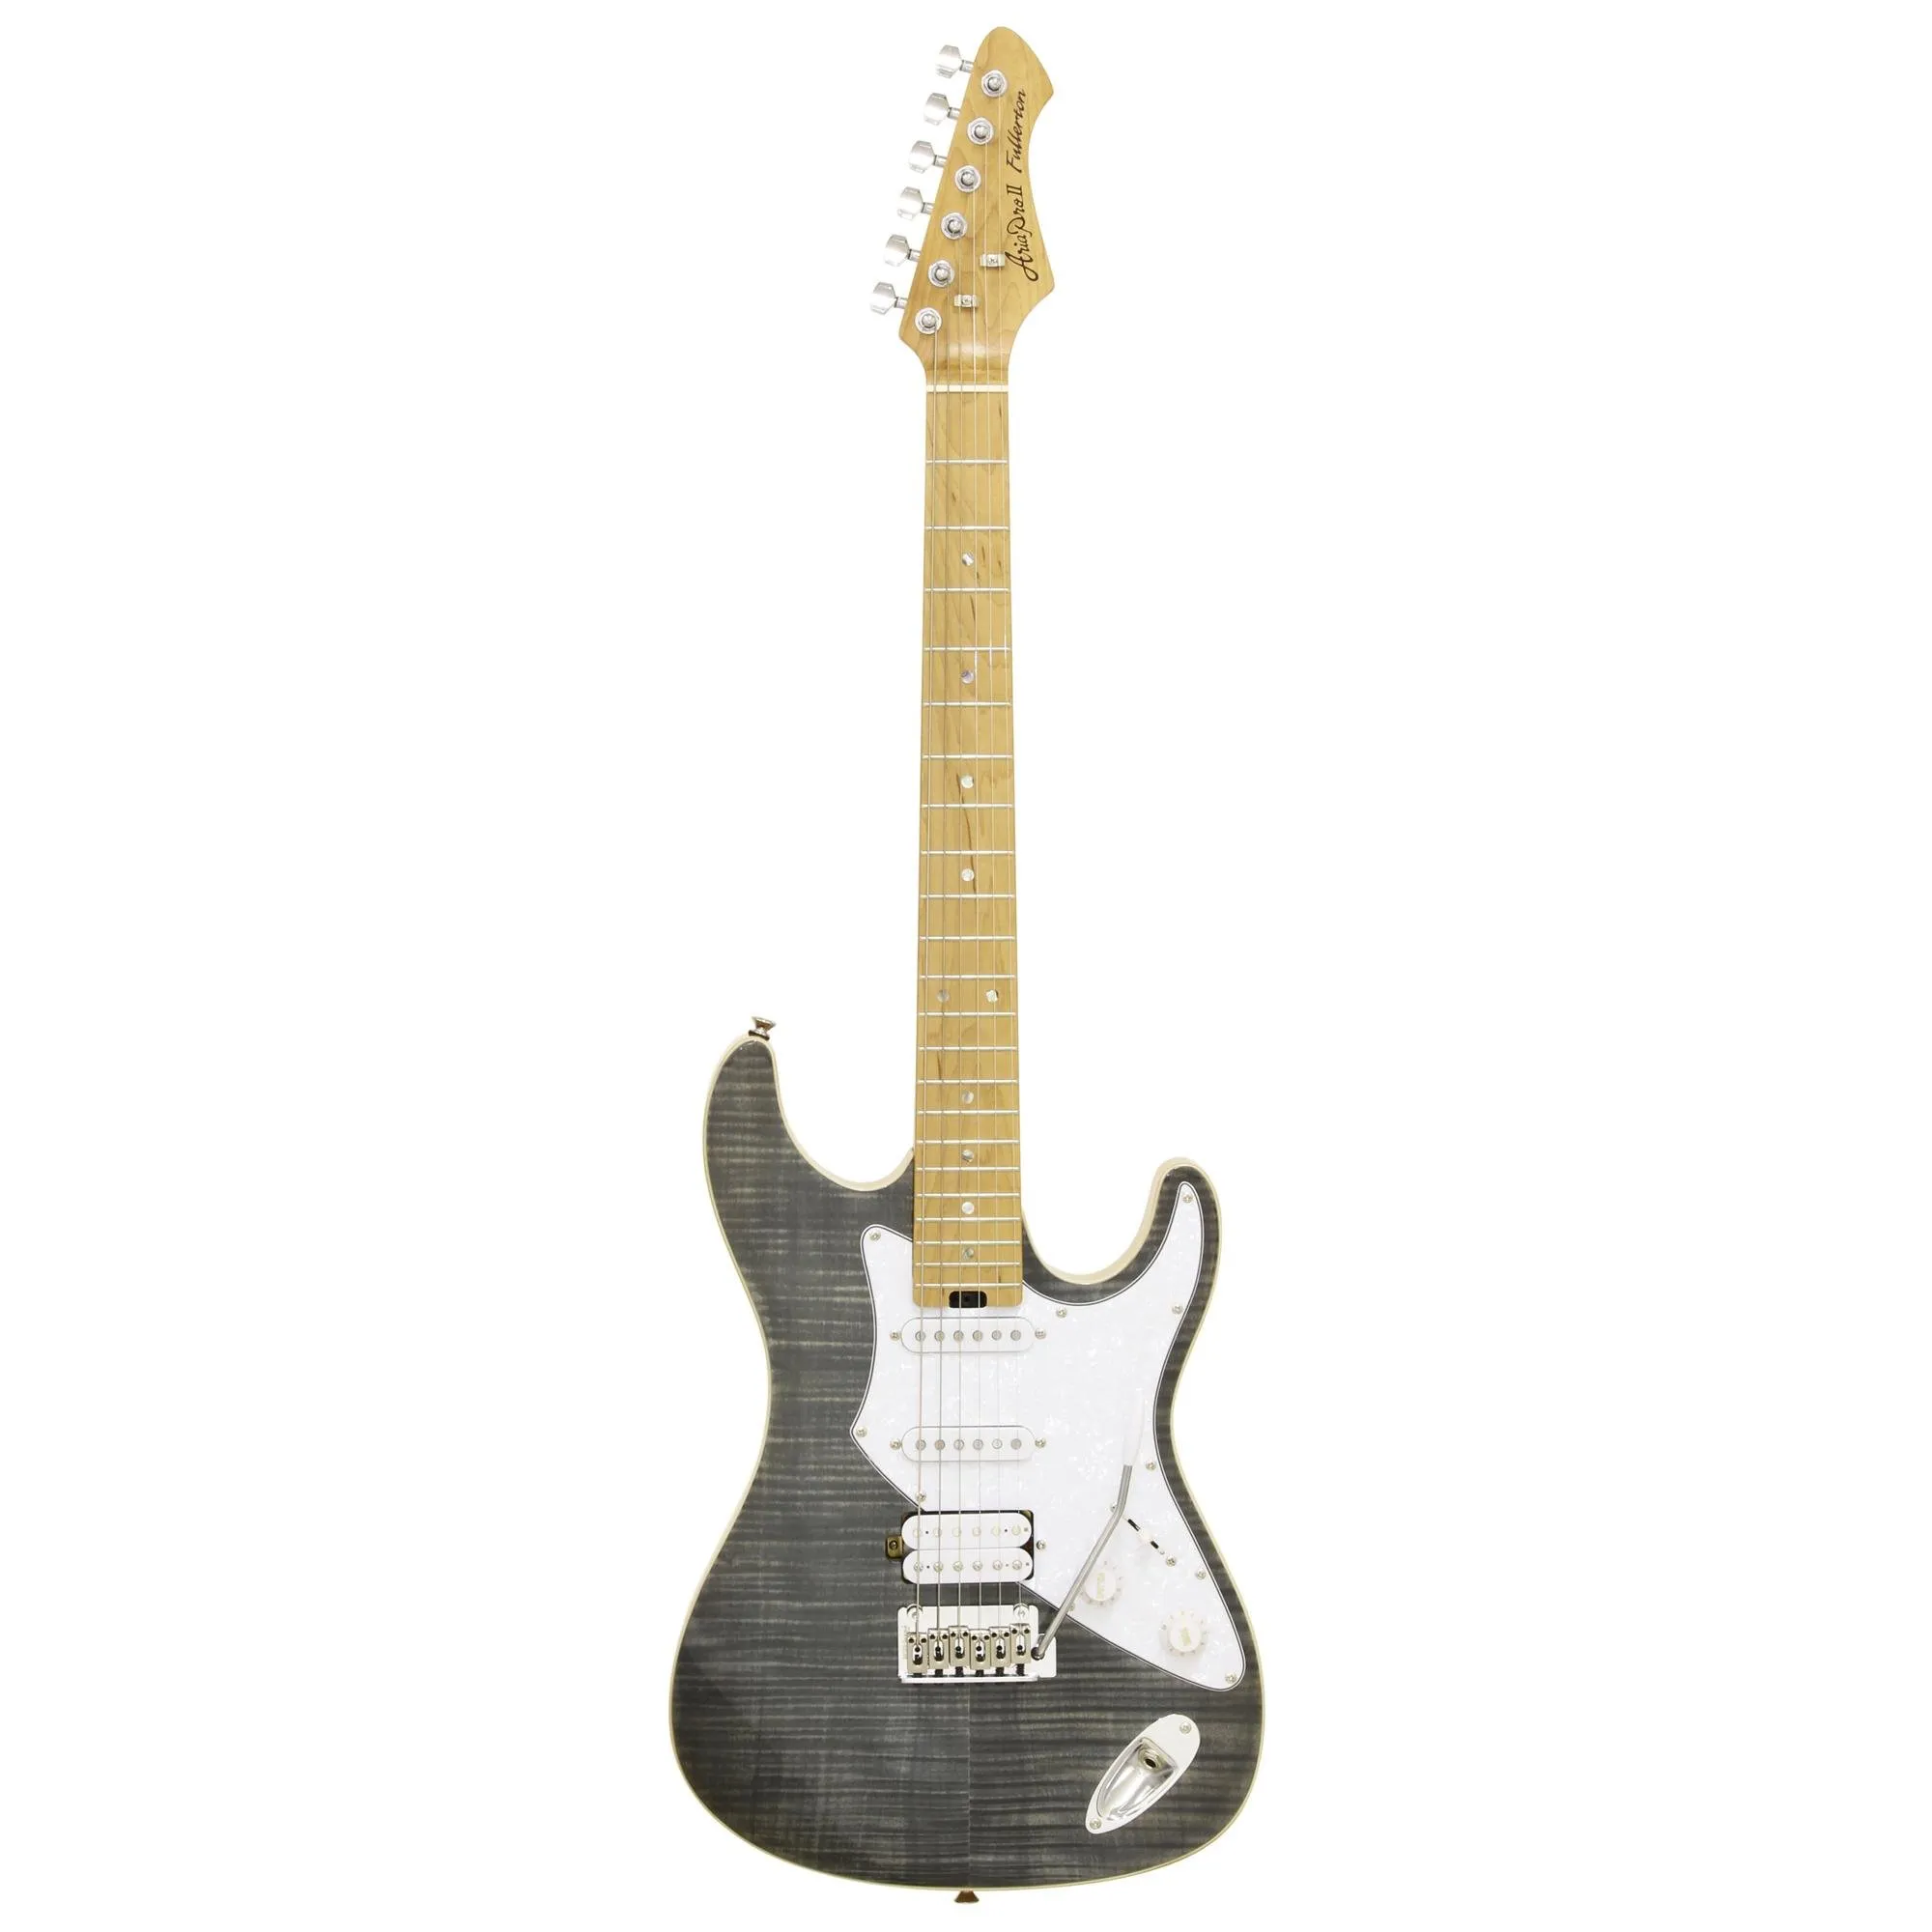 Guitarra Aria 714-MK2 Fullerton Black Diamond por 2.904,00 à vista no boleto/pix ou parcele em até 12x sem juros. Compre na loja Mundomax!